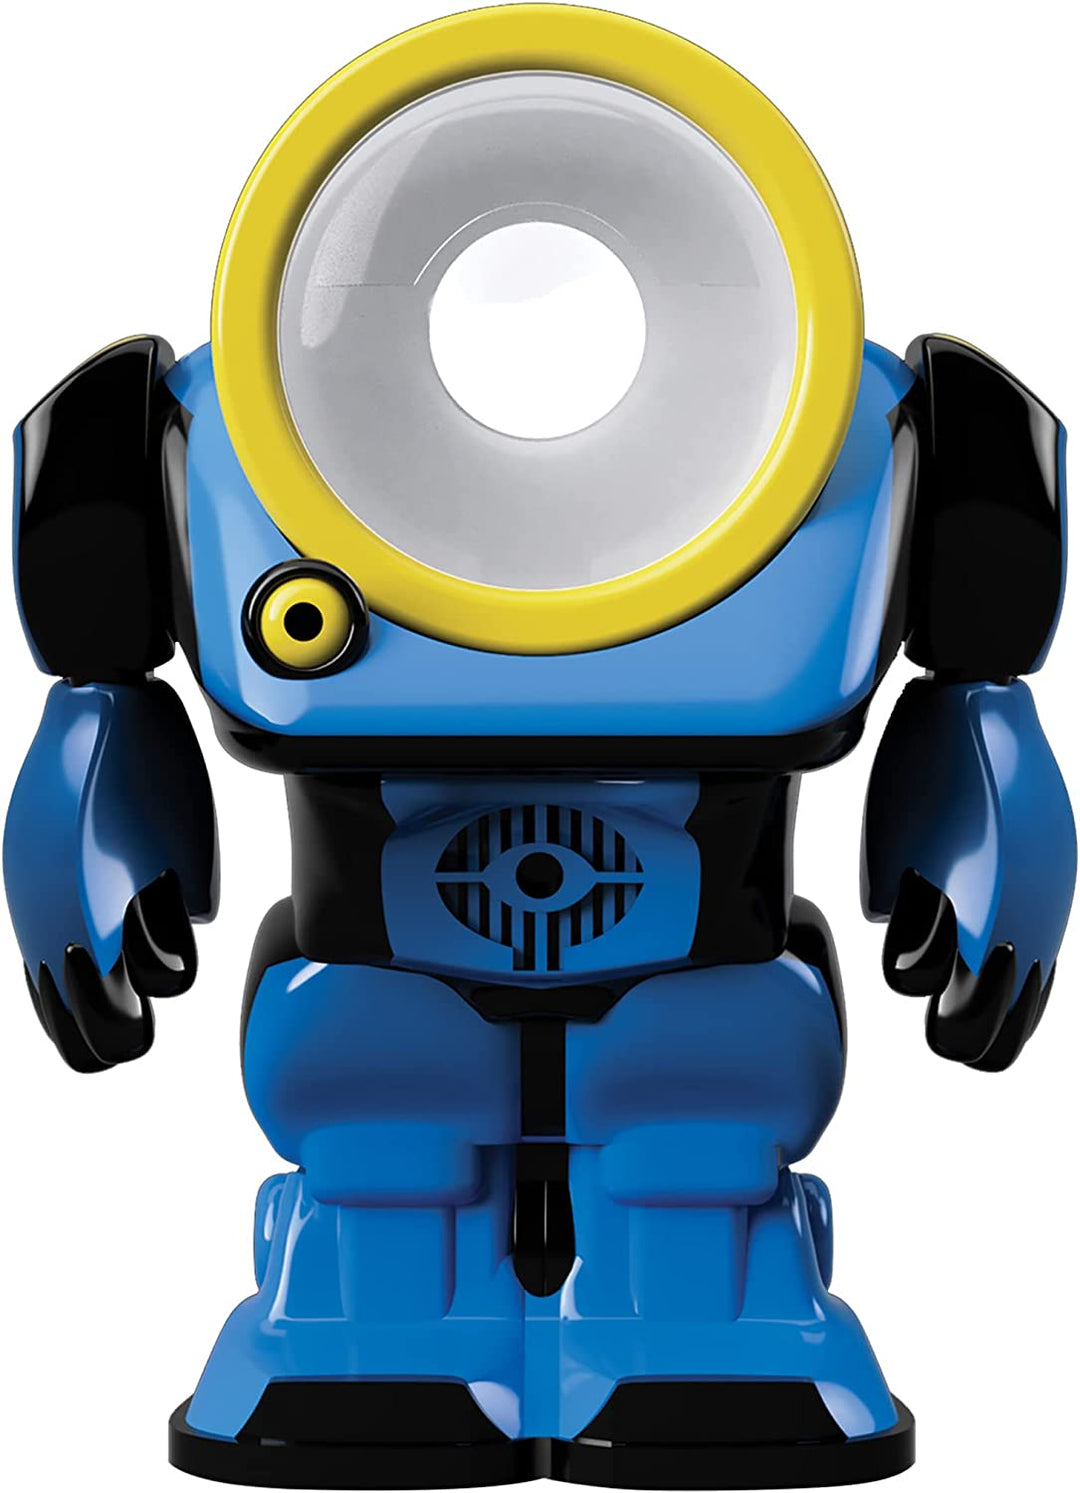 SpyBots SpotBot – Sicherheitsroboter! LED-Suchlicht. Lustiges Gadget-Spielzeug für Jungen